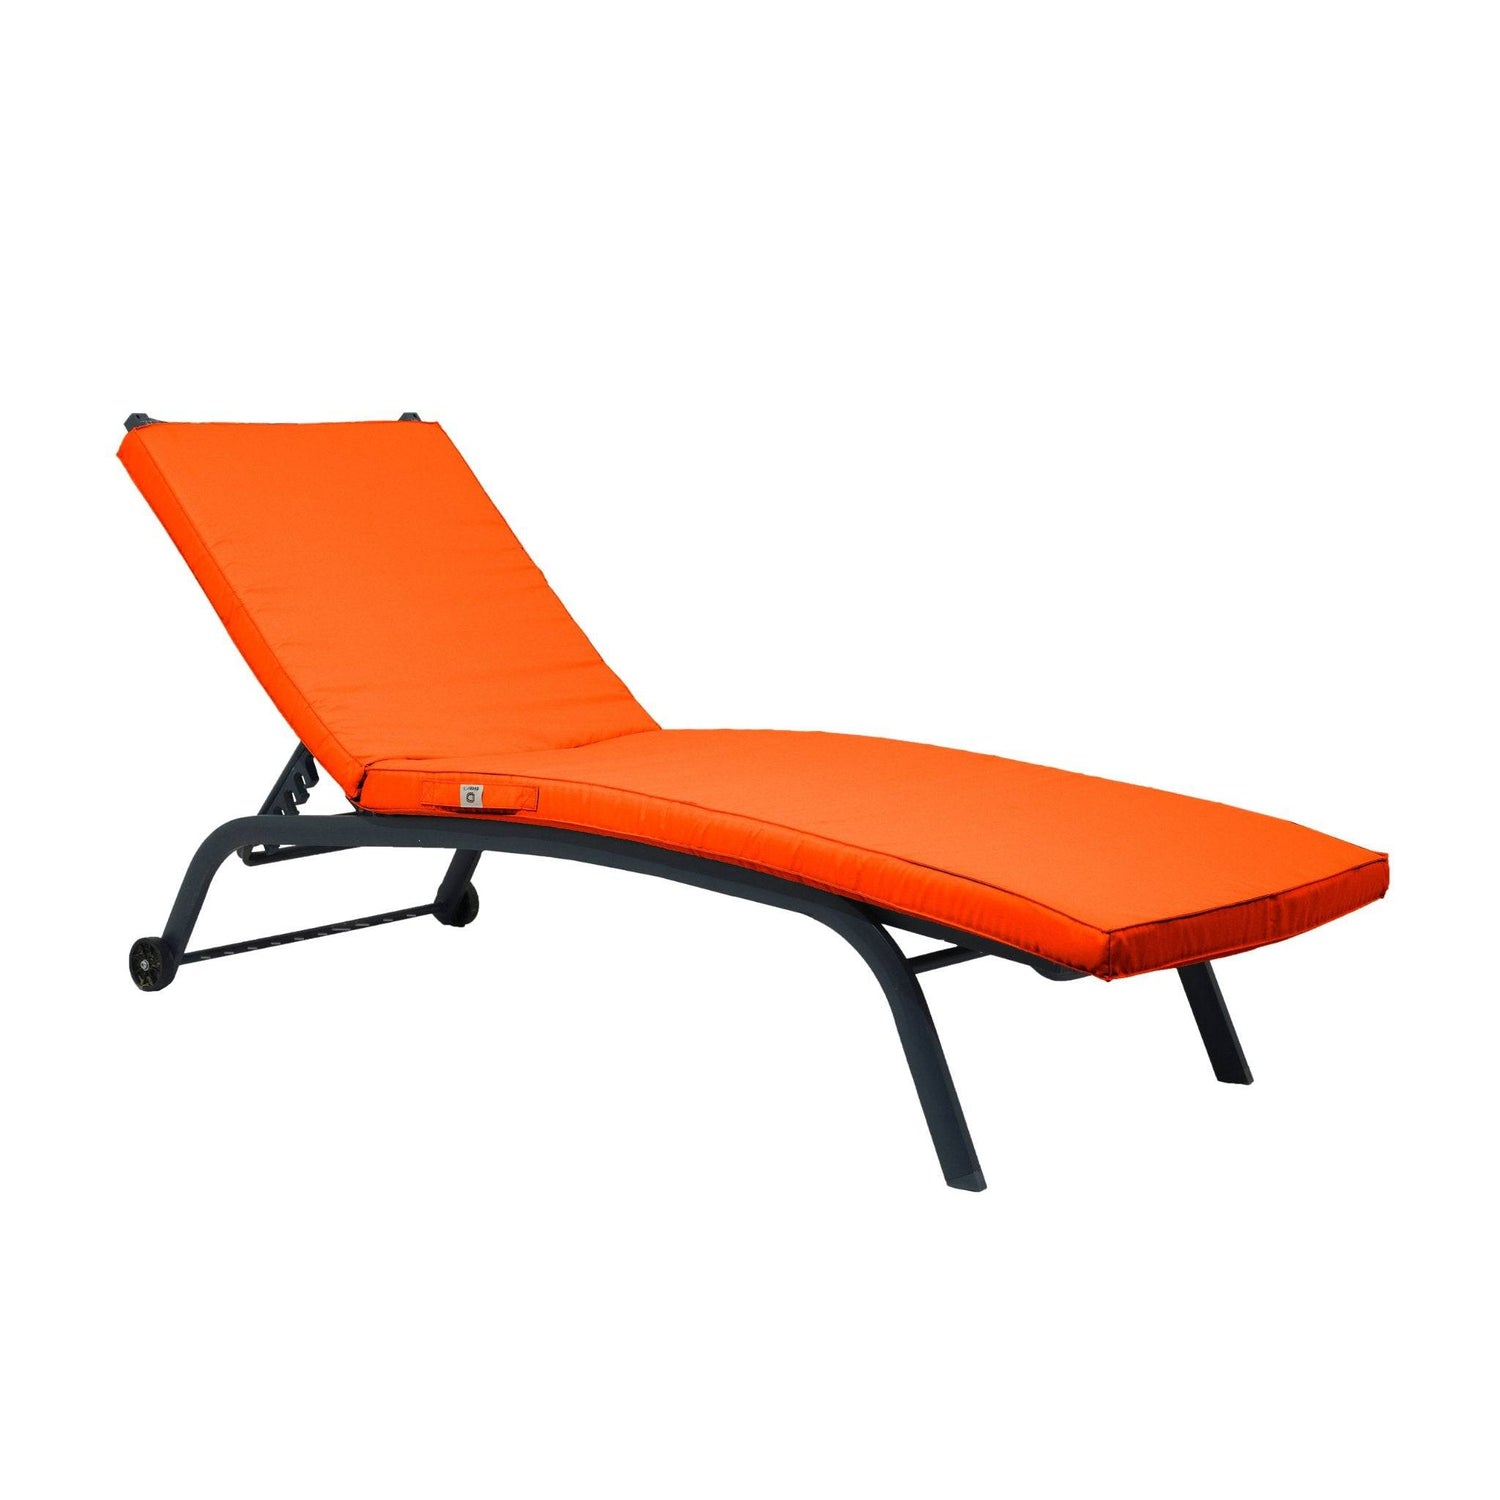 Matelas orange pour chaise longue